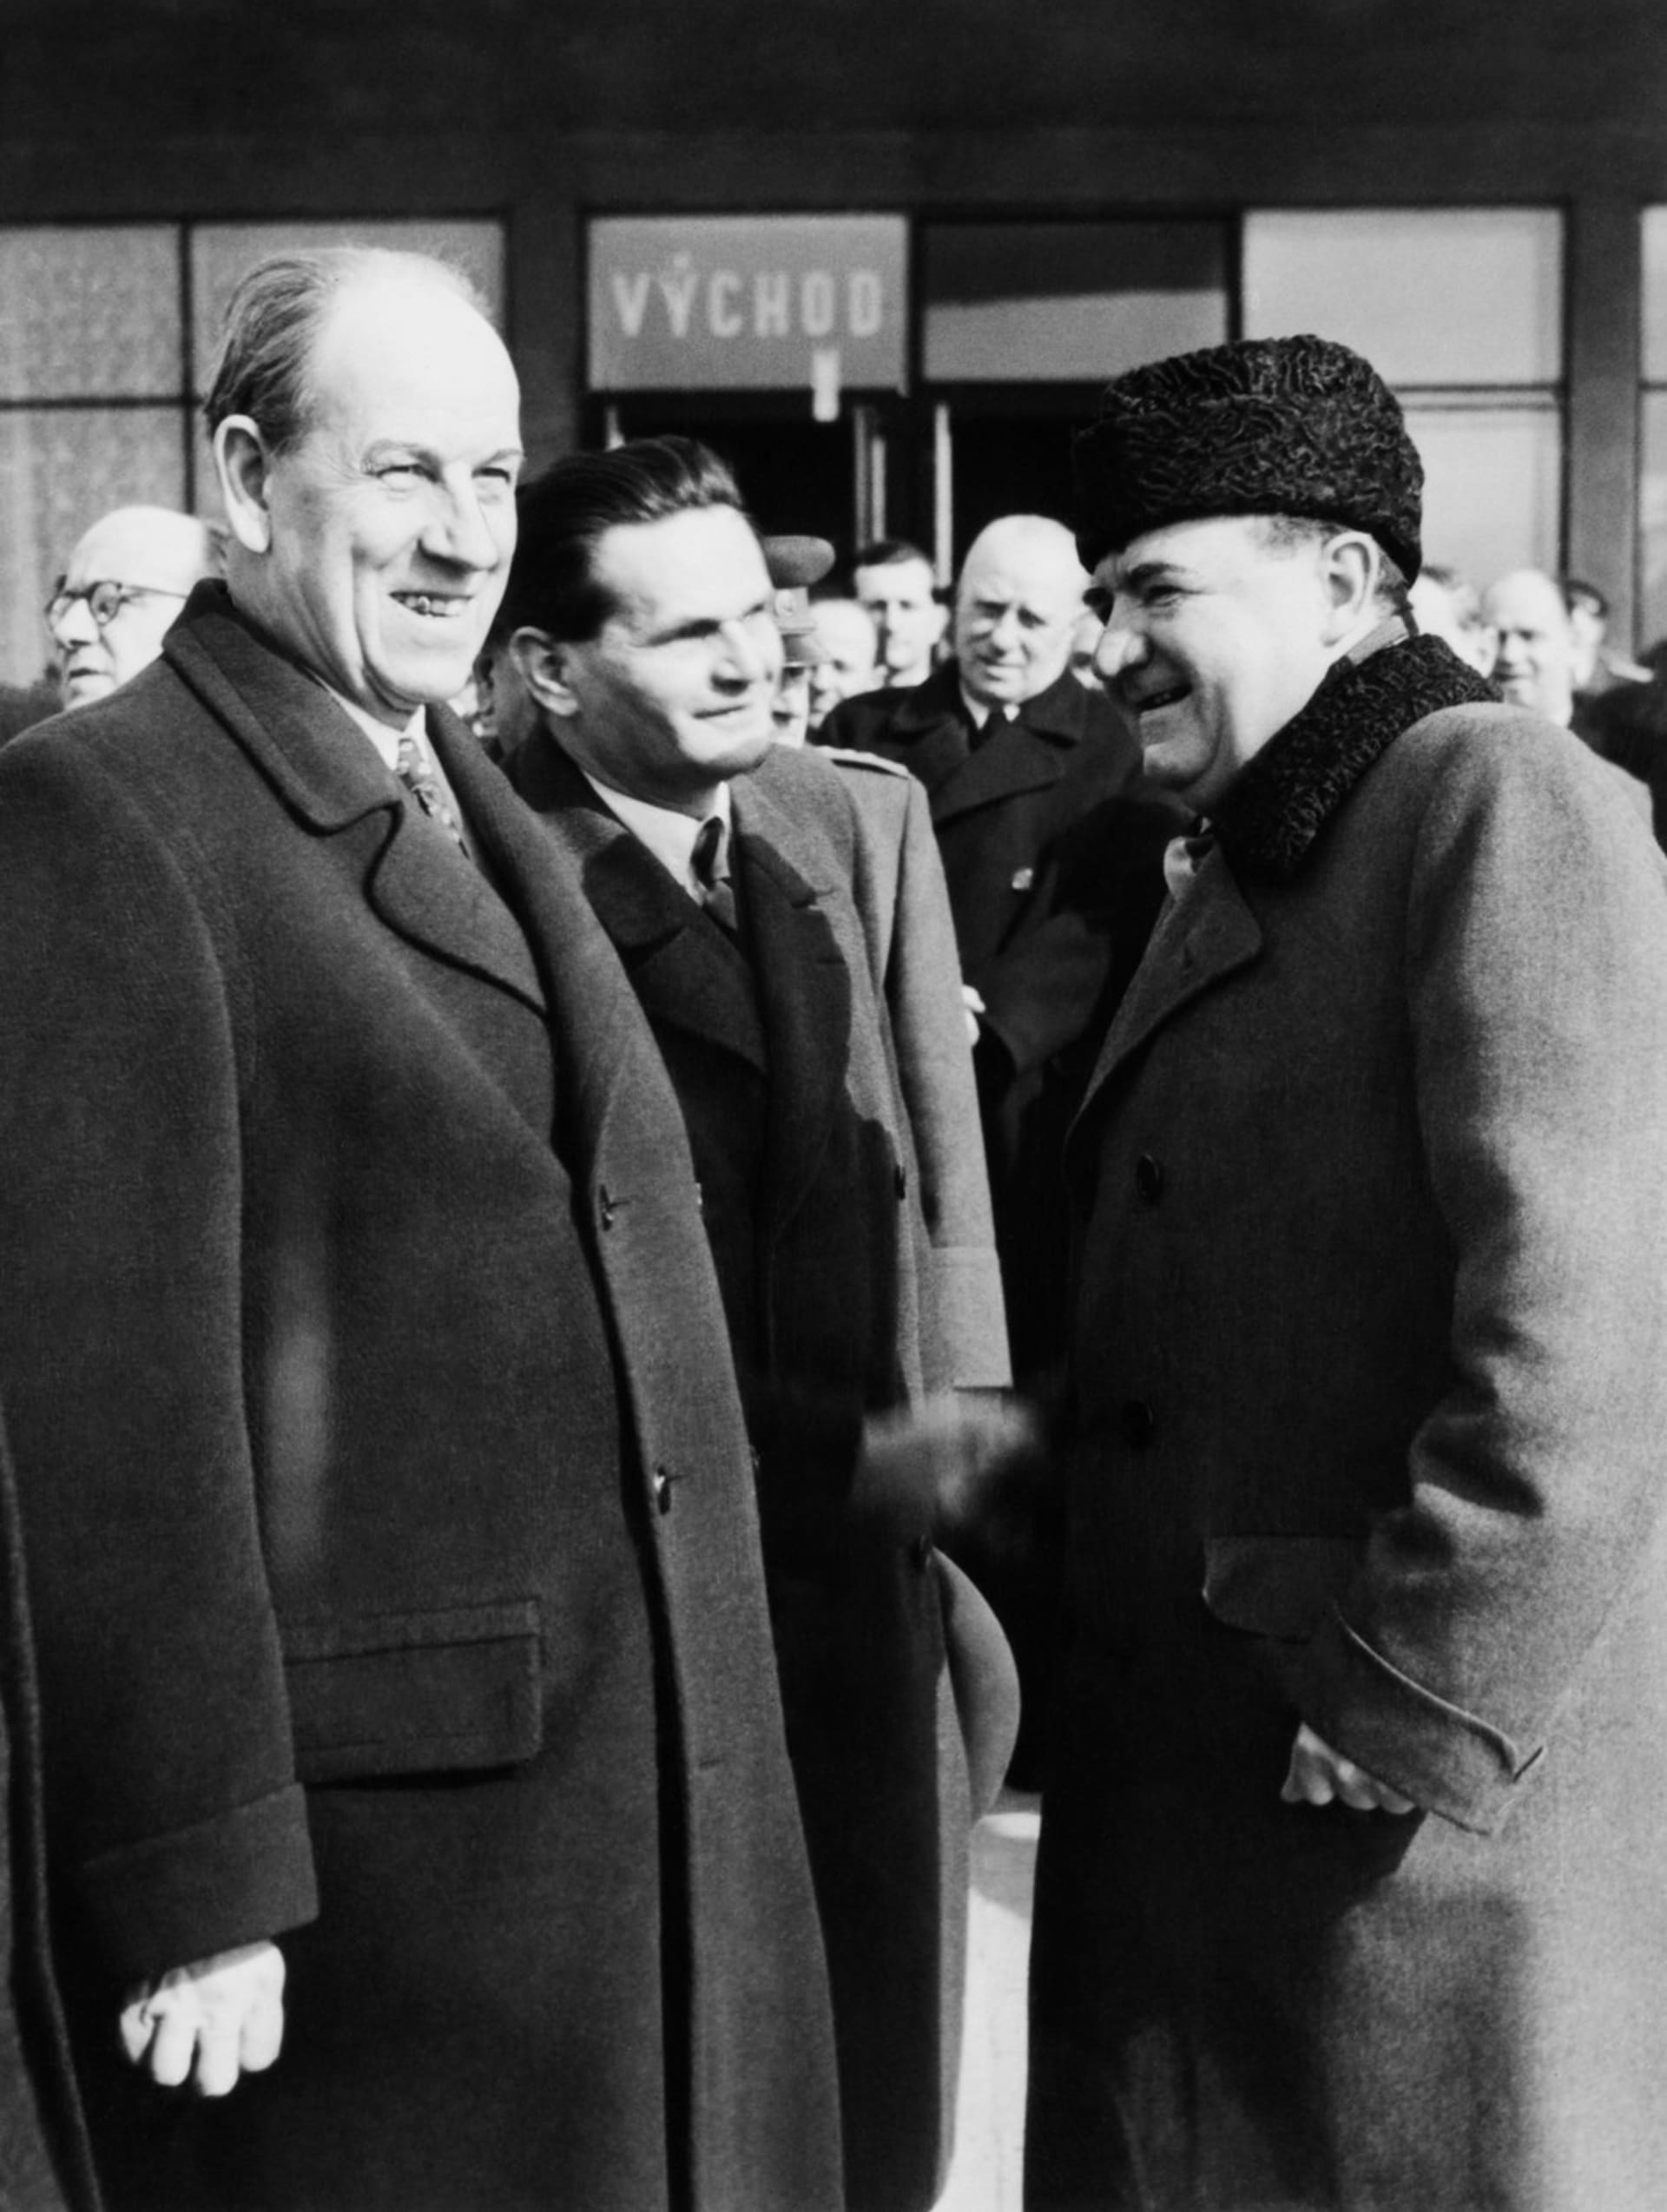 Klement Gottwald (vpravo) se po příletu ze Stalinova pohřbu zdraví s předsedou vlády Antonínem Zápotockým. Jde pravděpodobně o poslední snímek, který zachycuje Gottwalda živého.